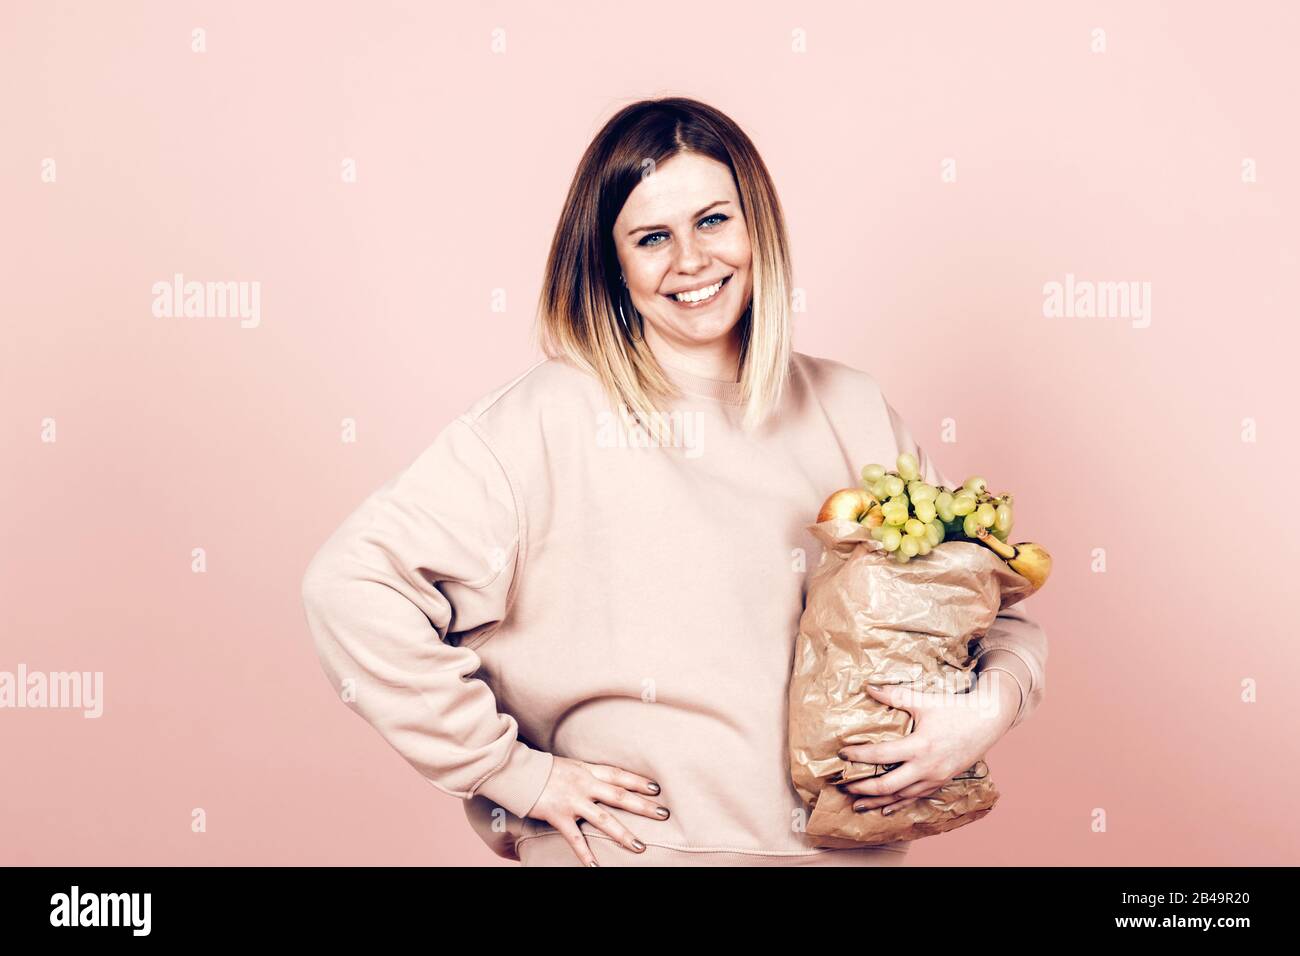 Attraktive positive Frau mit einem Papierbeutel voller Früchte - gesundes Essen und Lifestyle-Konzept Stockfoto